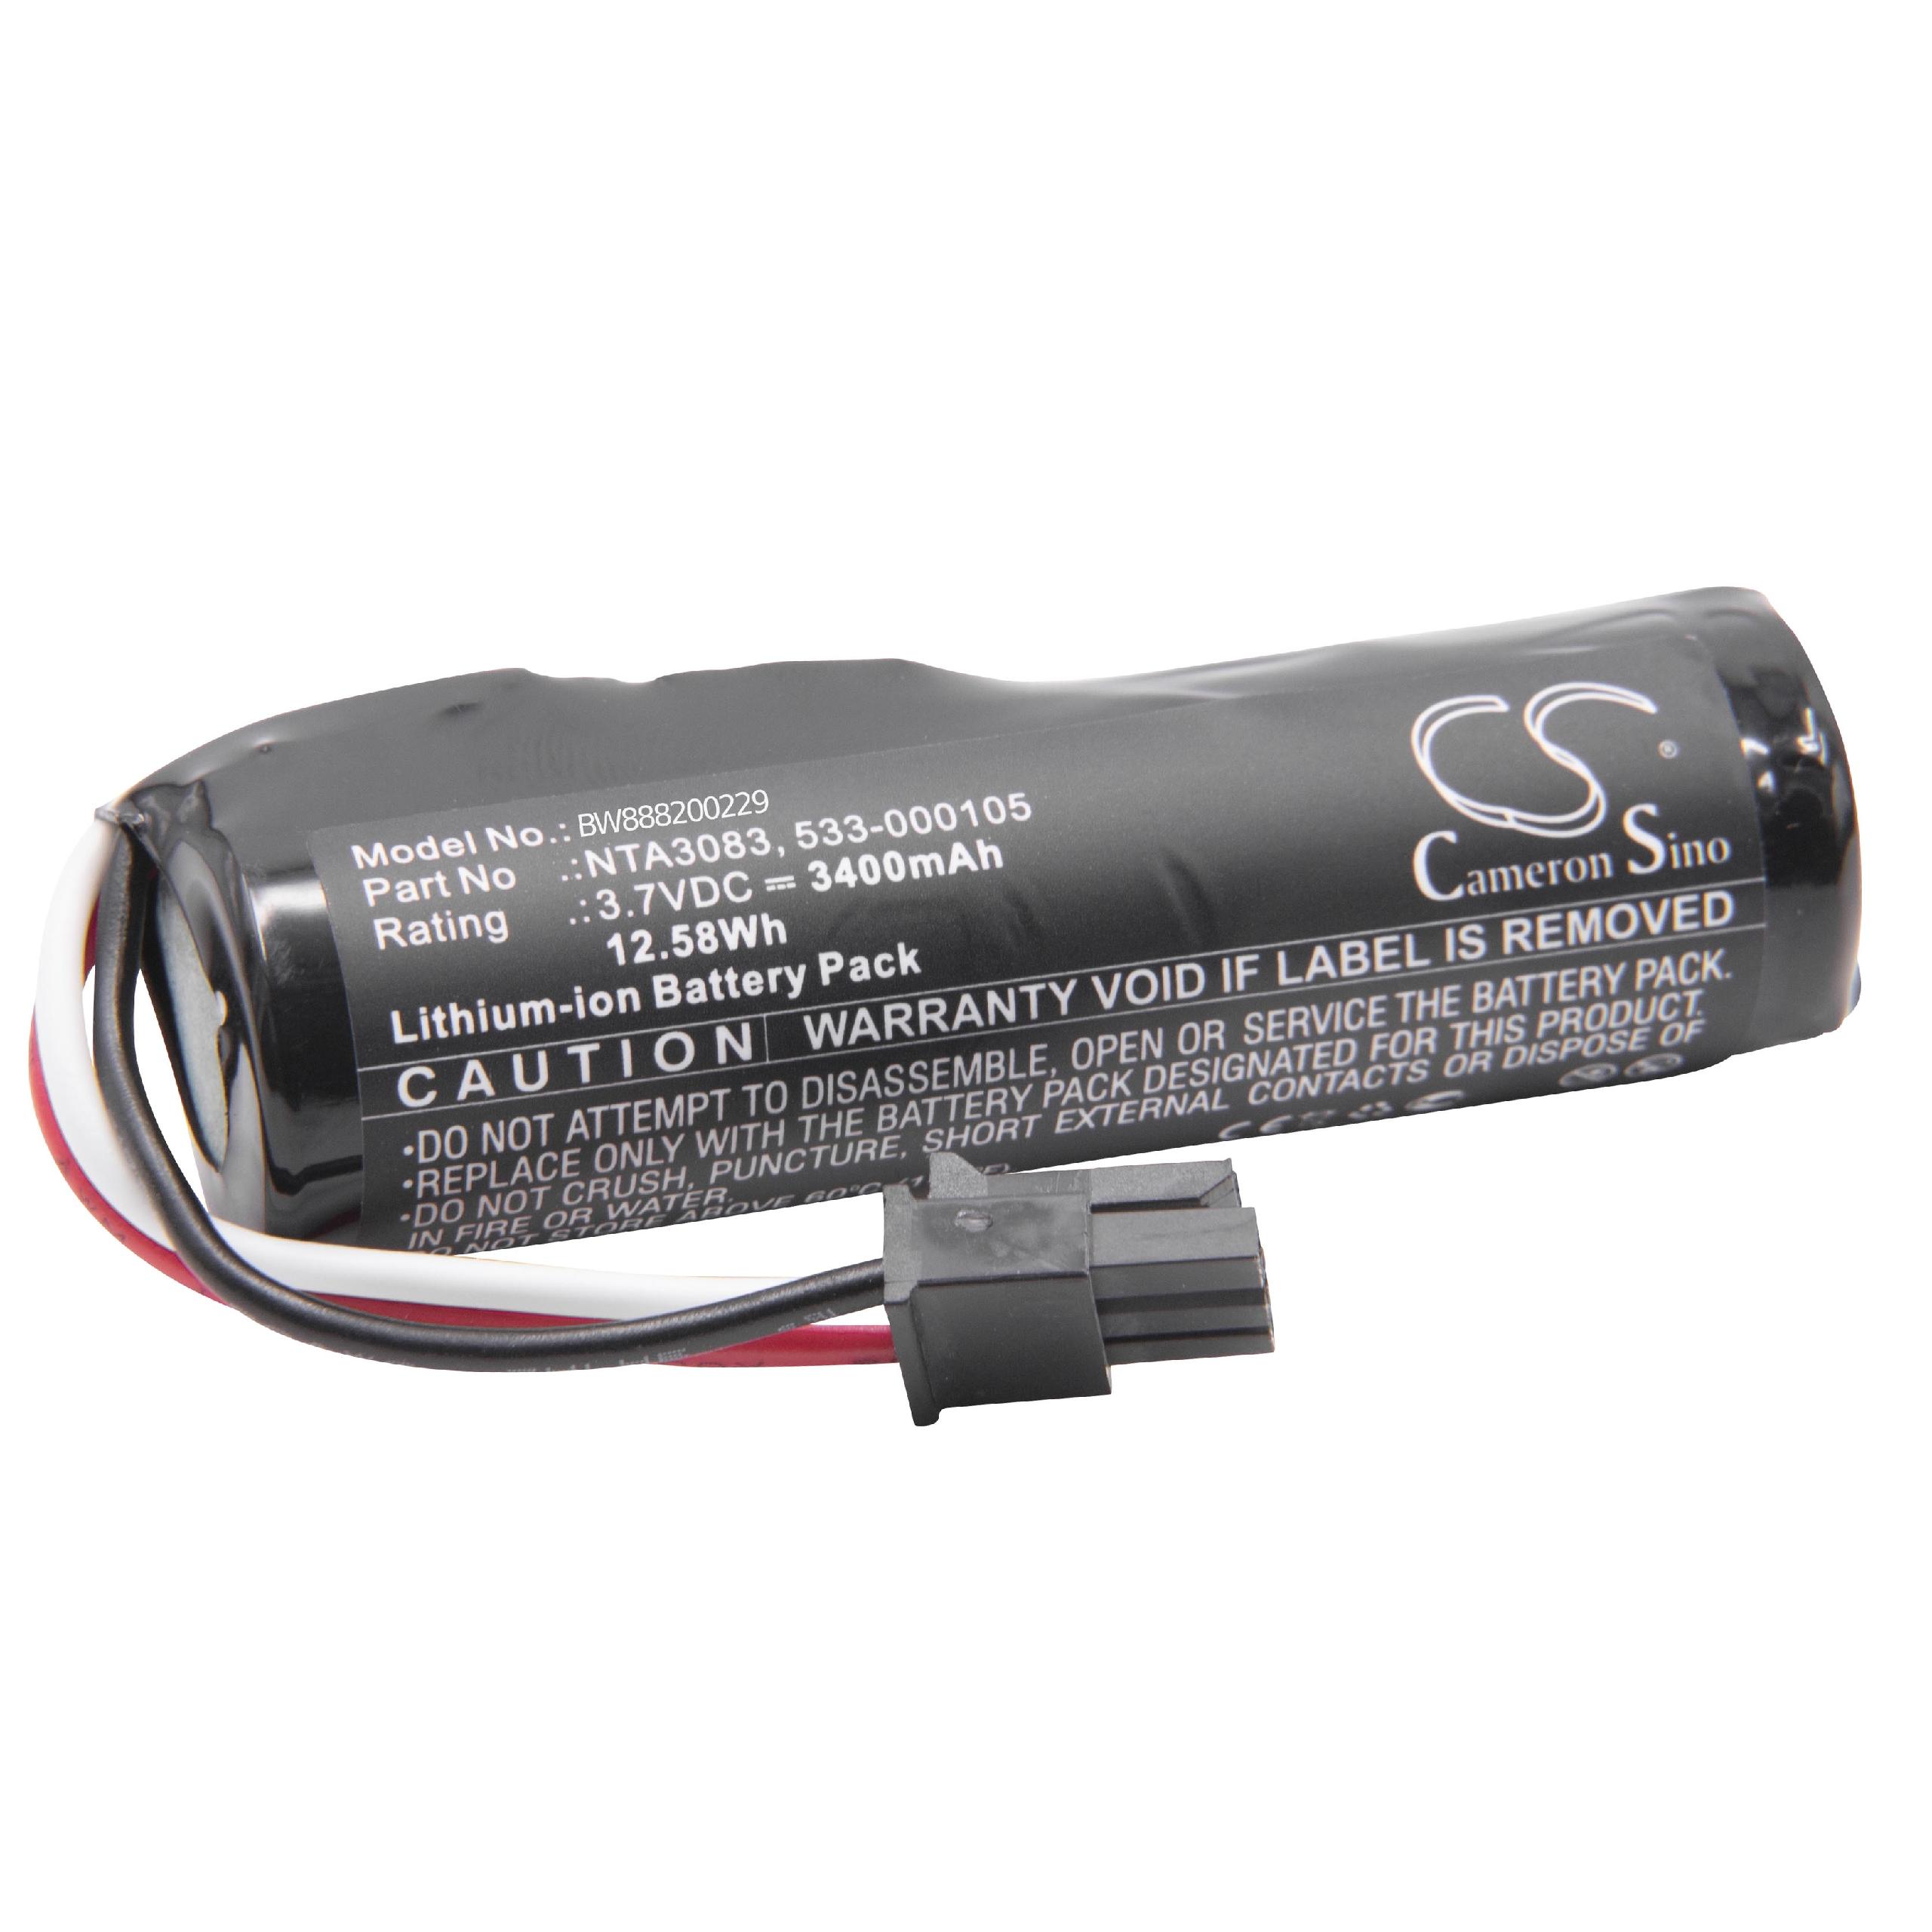 Batterie remplace Logitech NTA3083, 533-000105 pour enceinte Logitech - 3400mAh 3,7V Li-ion